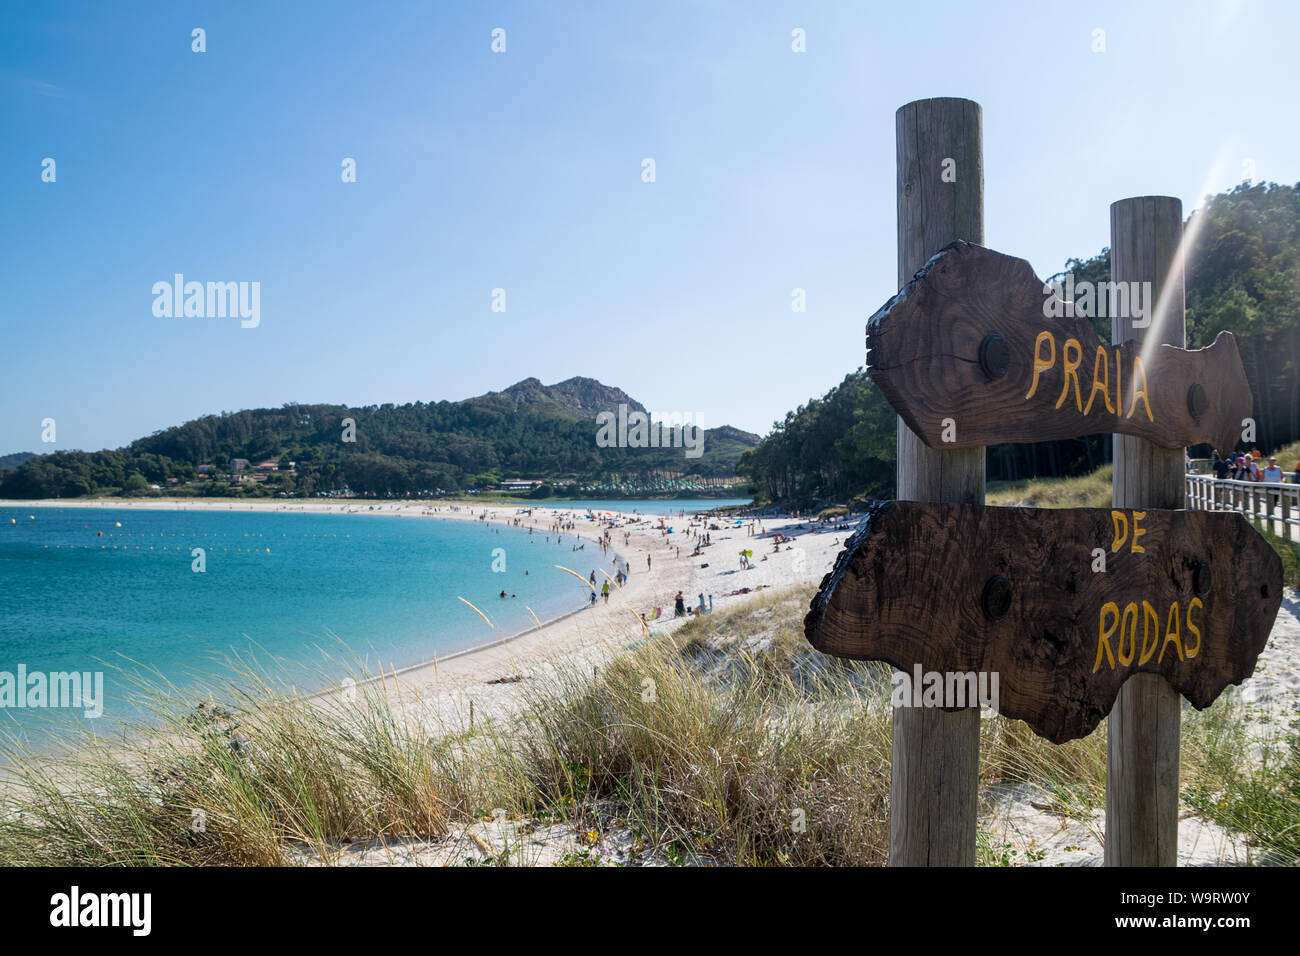 Vista de la playa de Rodas en las Islas Cíes. Una de las mejores playas del mundo Foto de stock